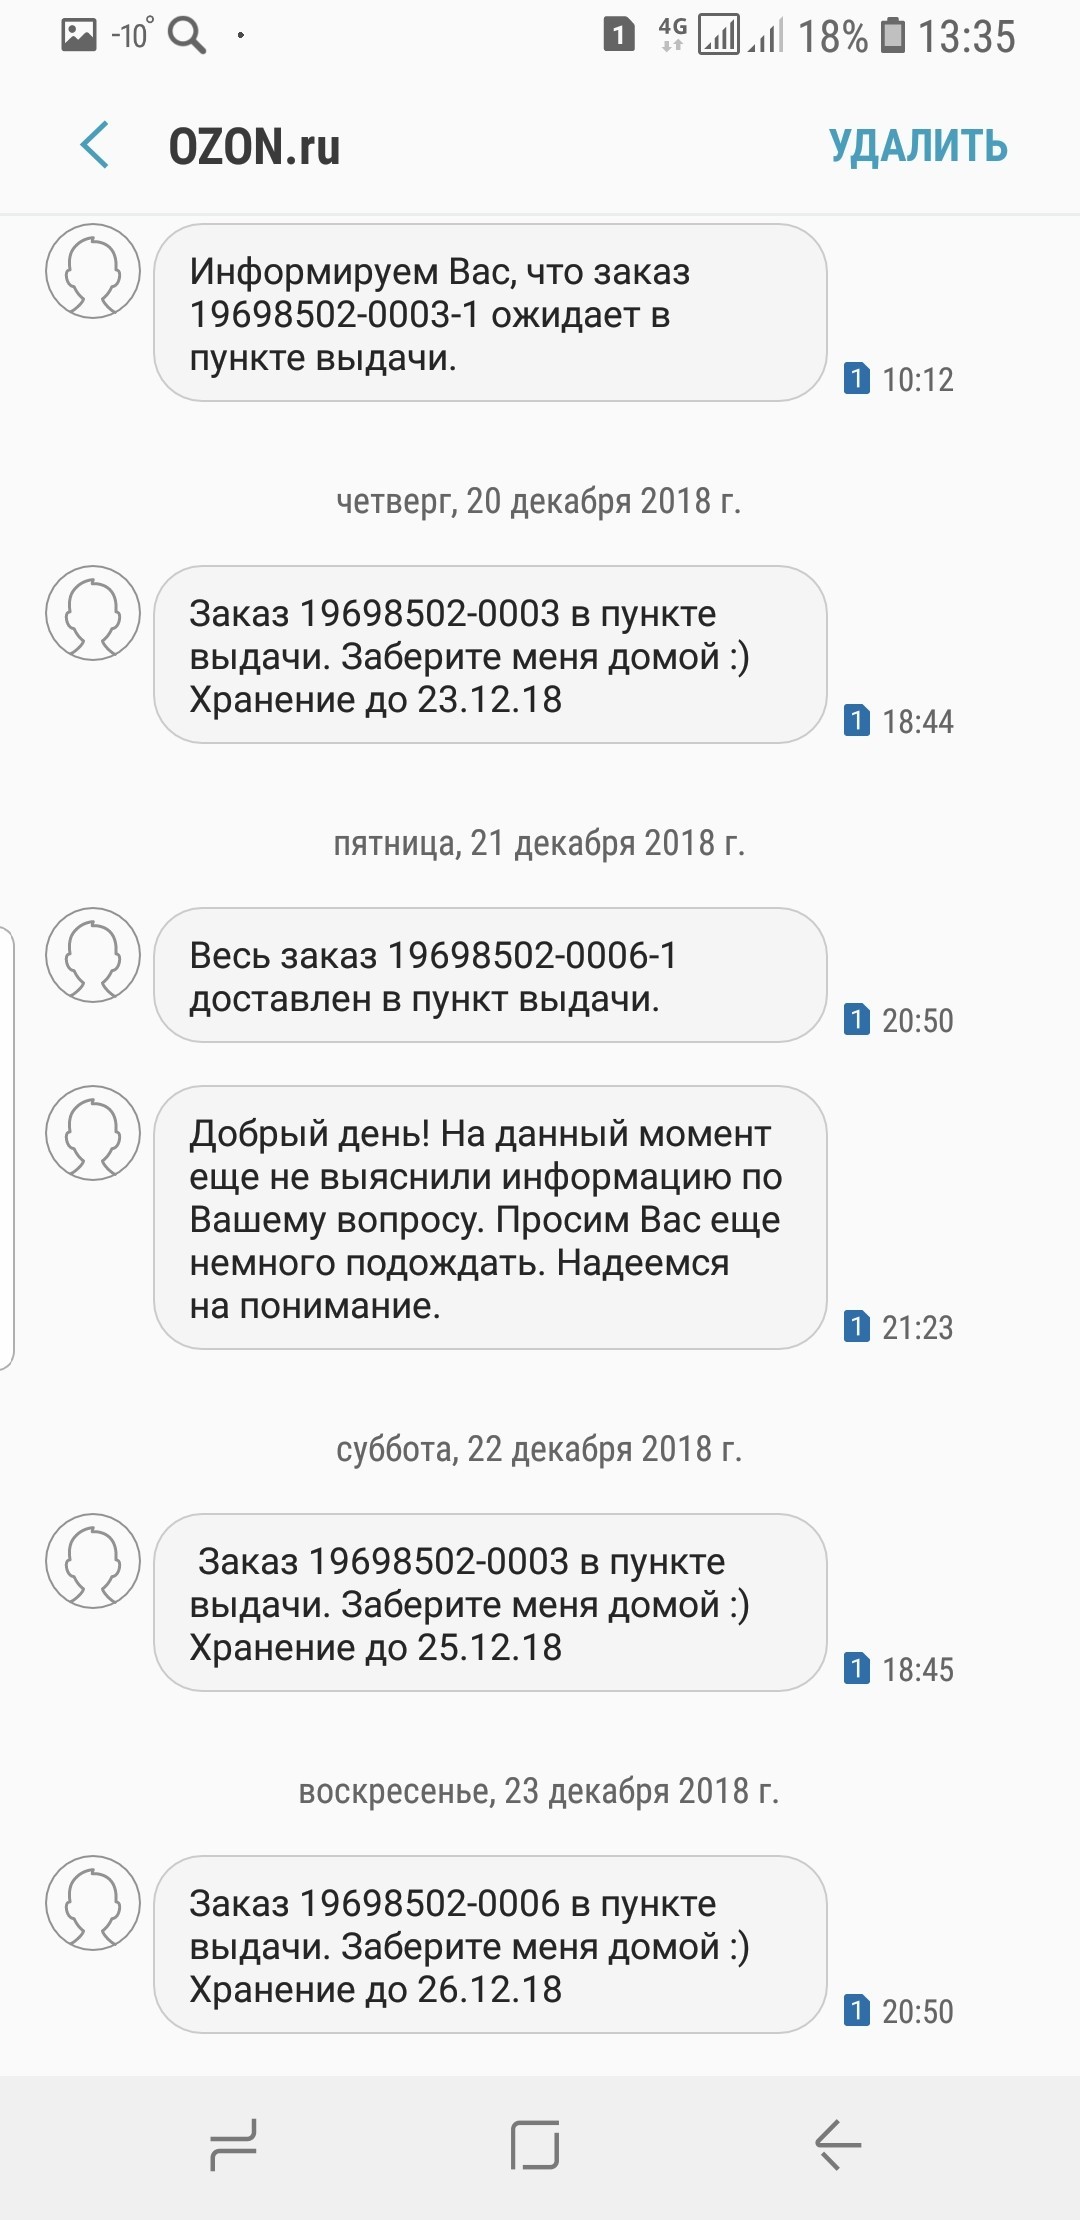 Позвонить В Озон Интернет Магазин Москва Бесплатно